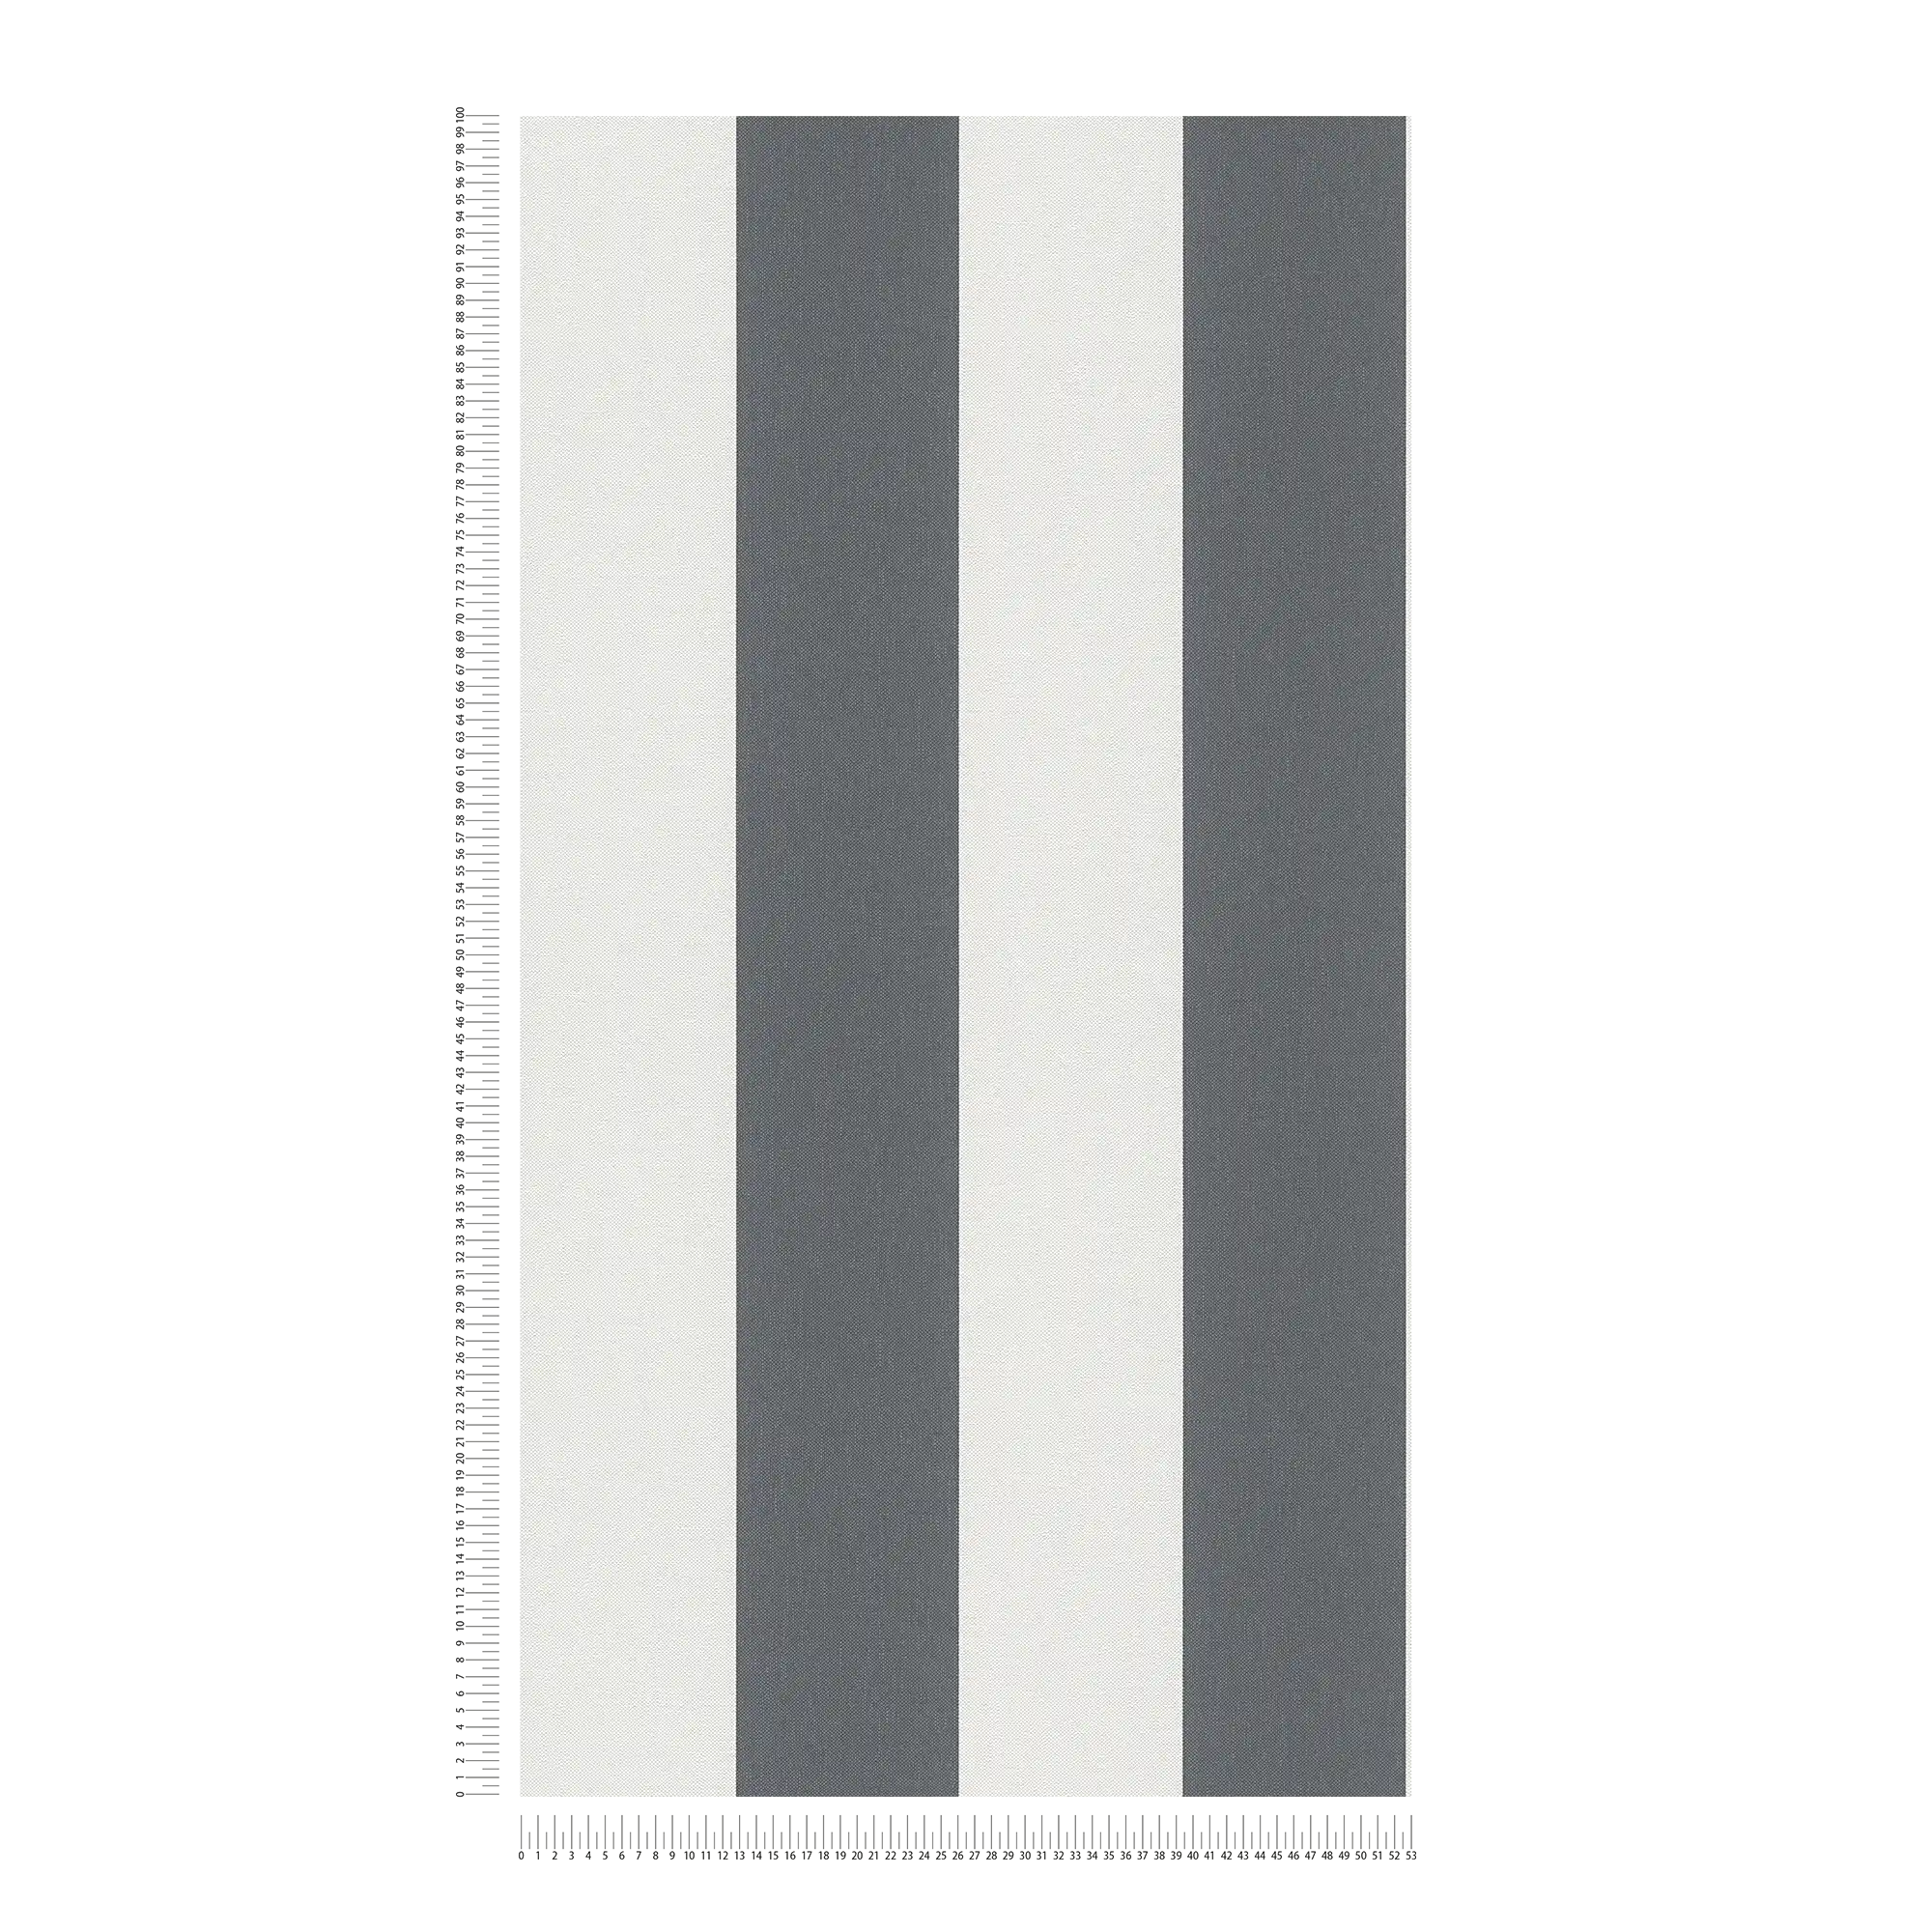             Papier peint à rayures en bloc avec structure en lin - gris, blanc
        